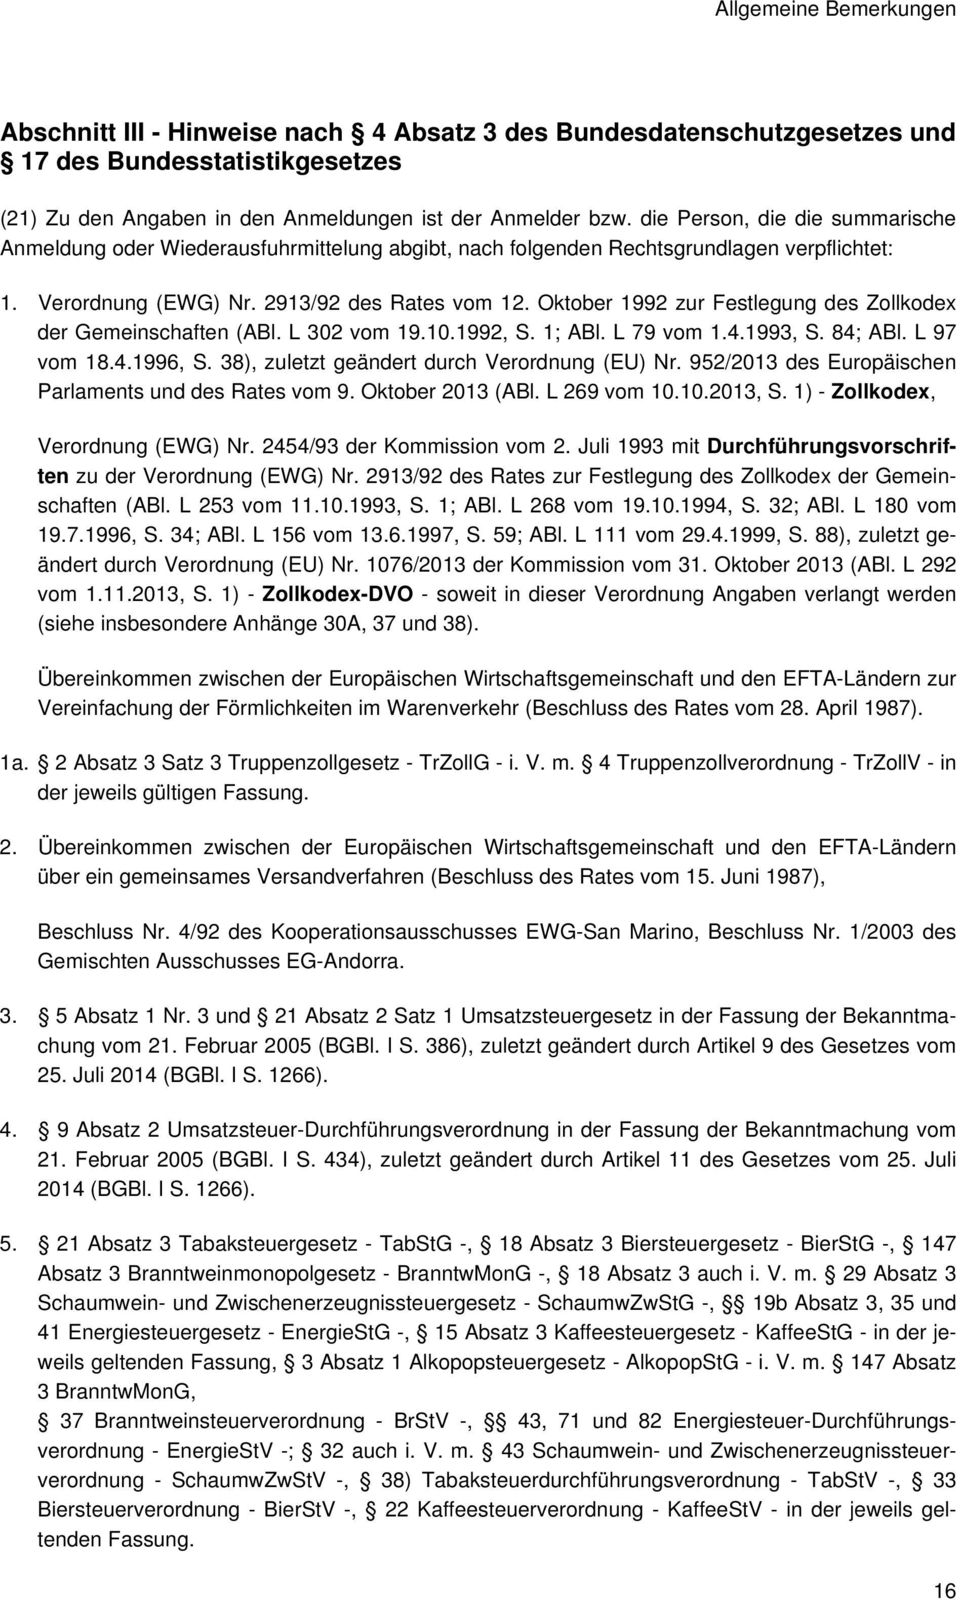 Oktober 1992 zur Festlegung des Zollkodex der Gemeinschaften (ABl. L 302 vom 19.10.1992, S. 1; ABl. L 79 vom 1.4.1993, S. 84; ABl. L 97 vom 18.4.1996, S.